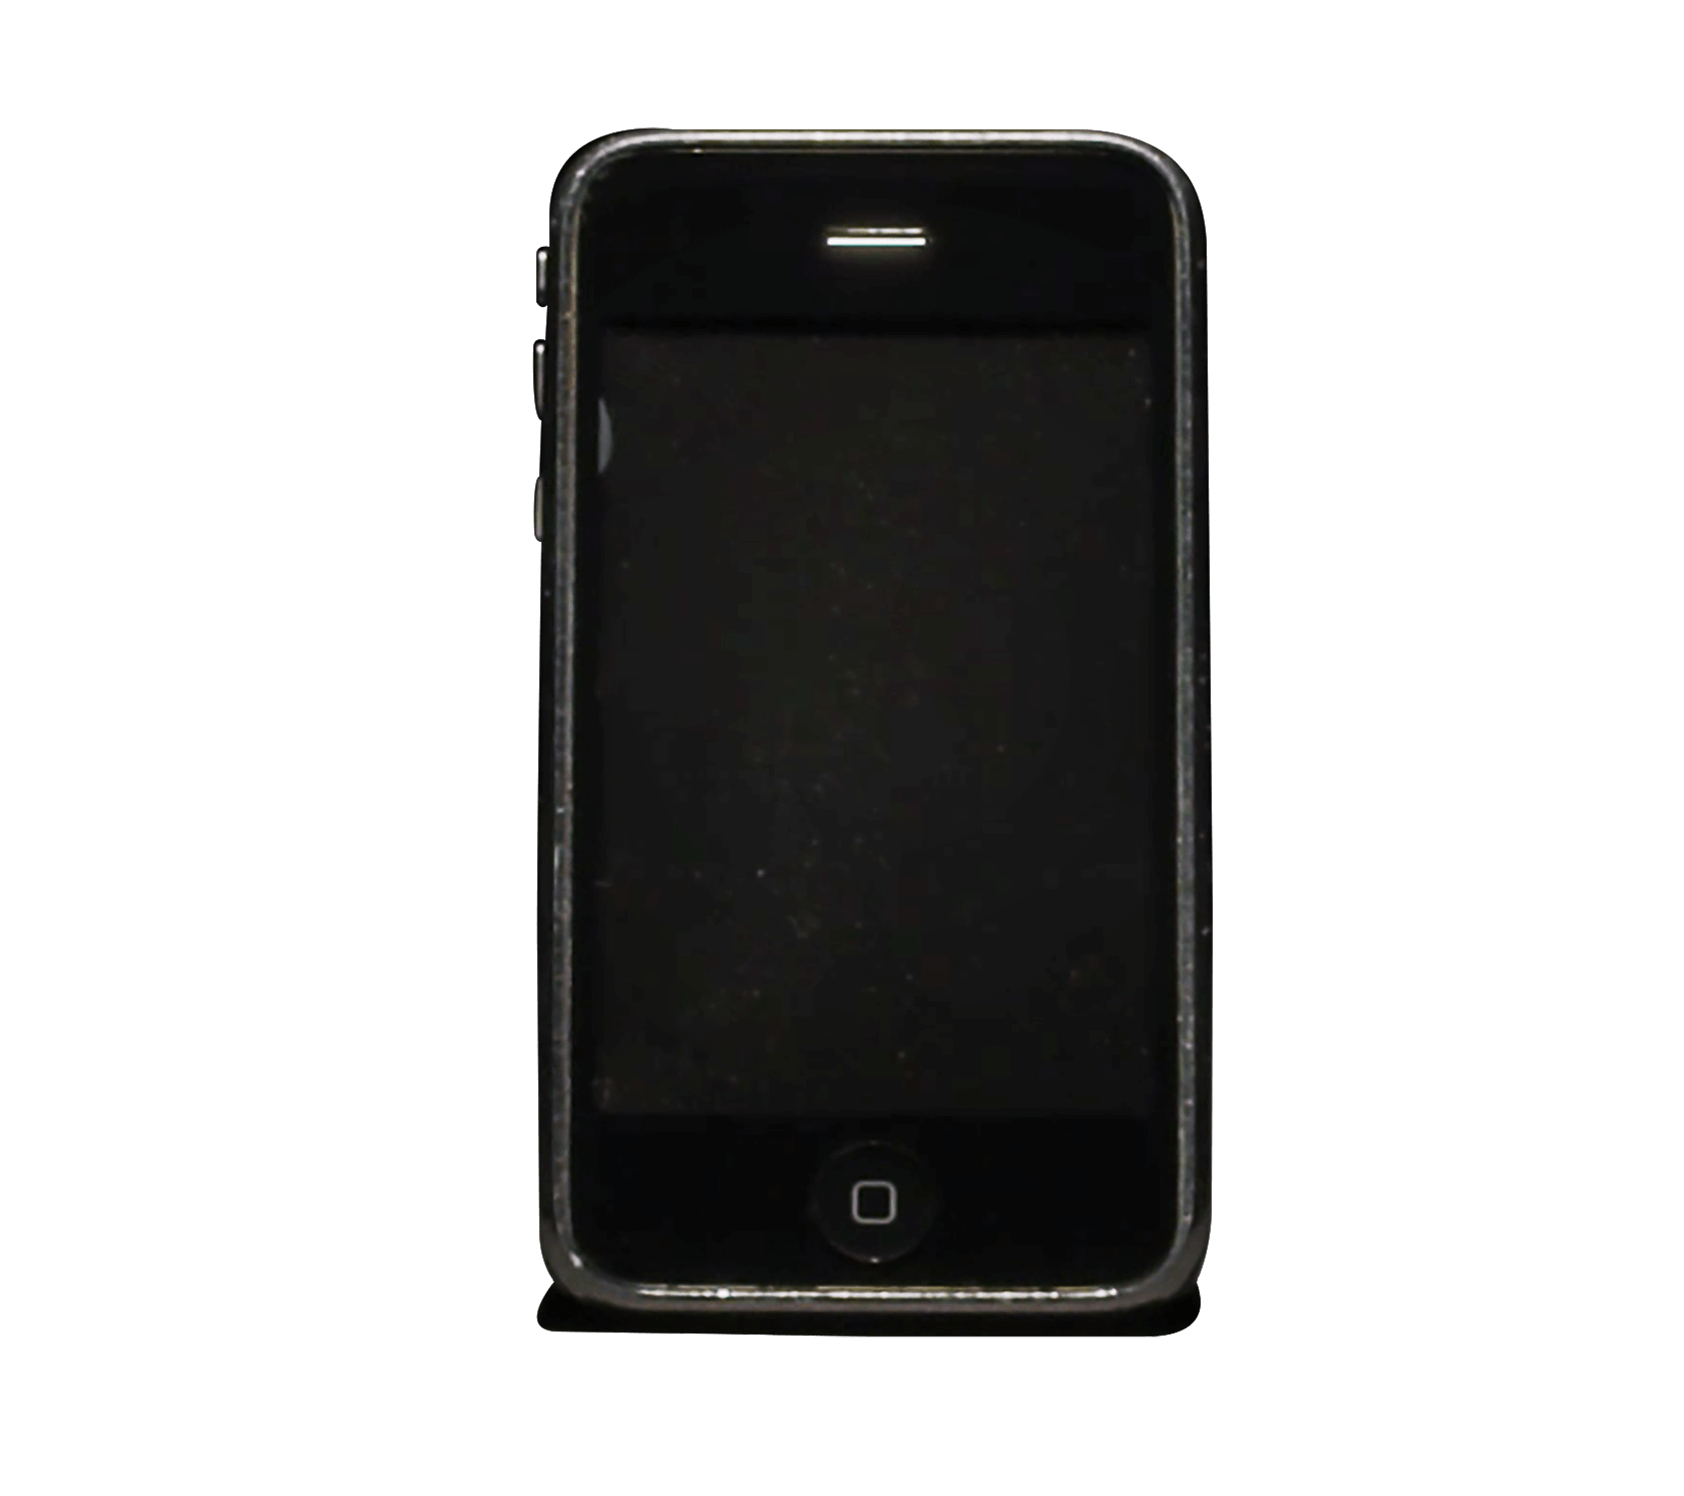 2010s phone